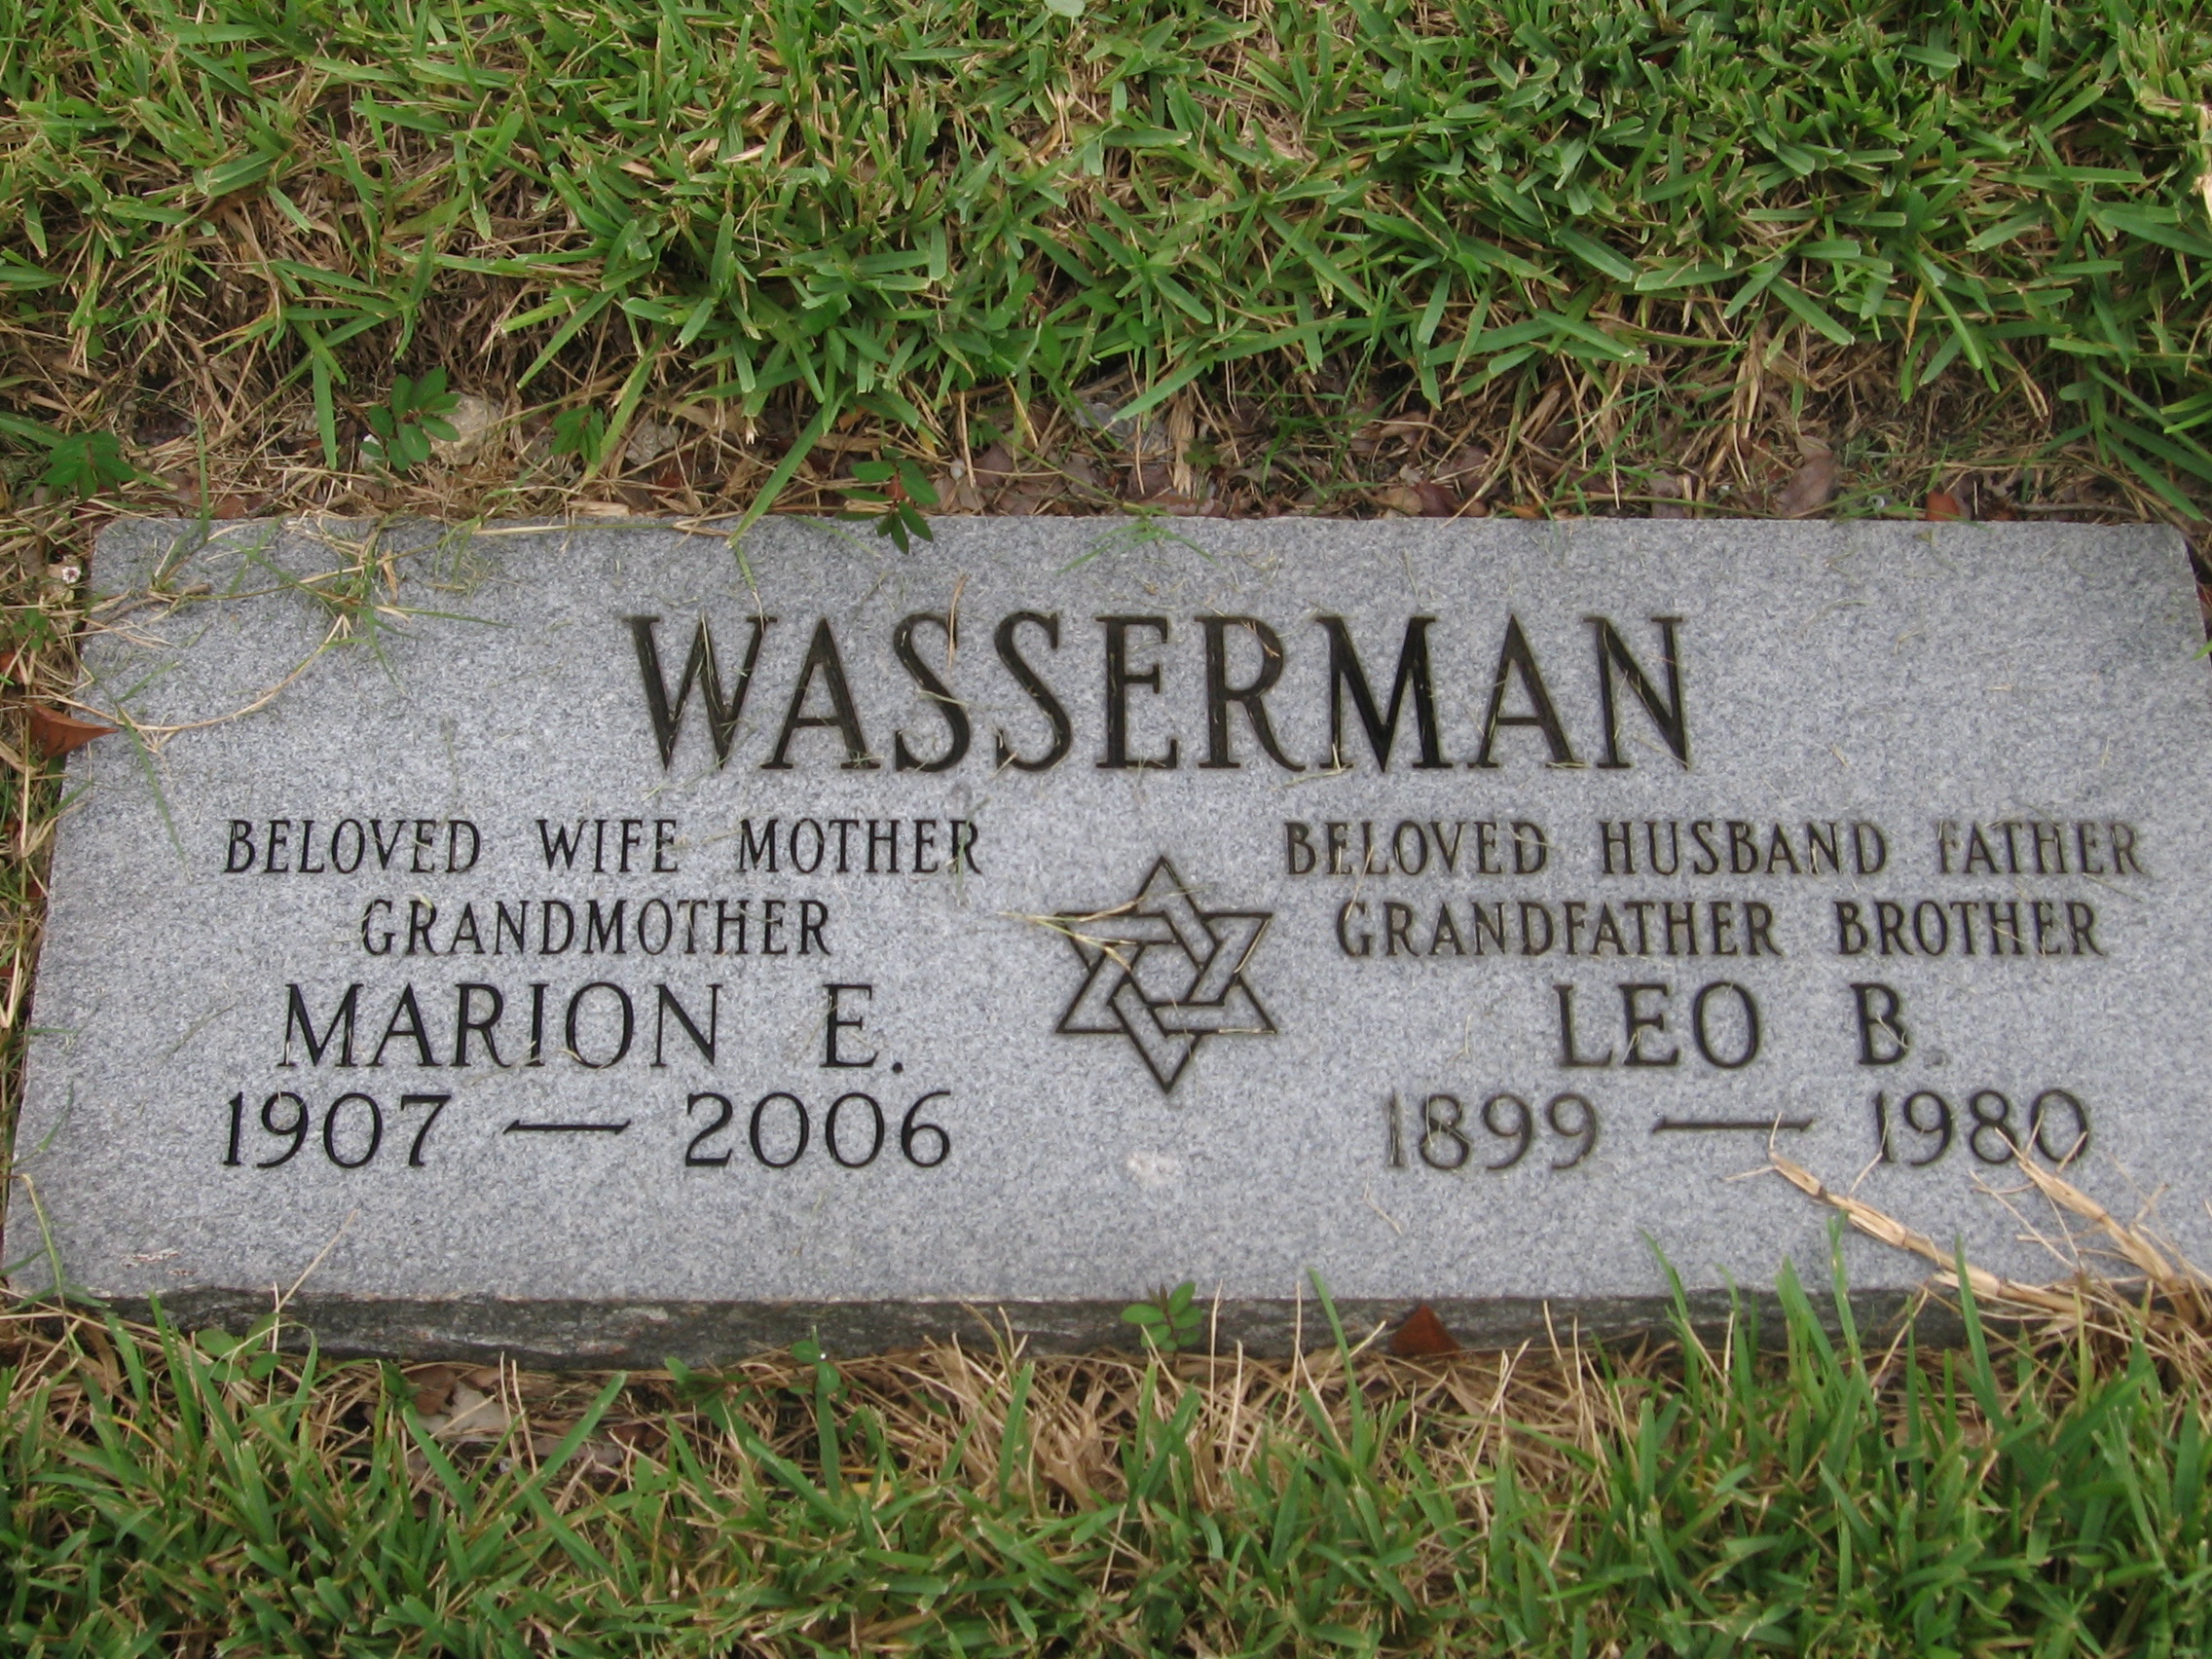 Leo B Wasserman